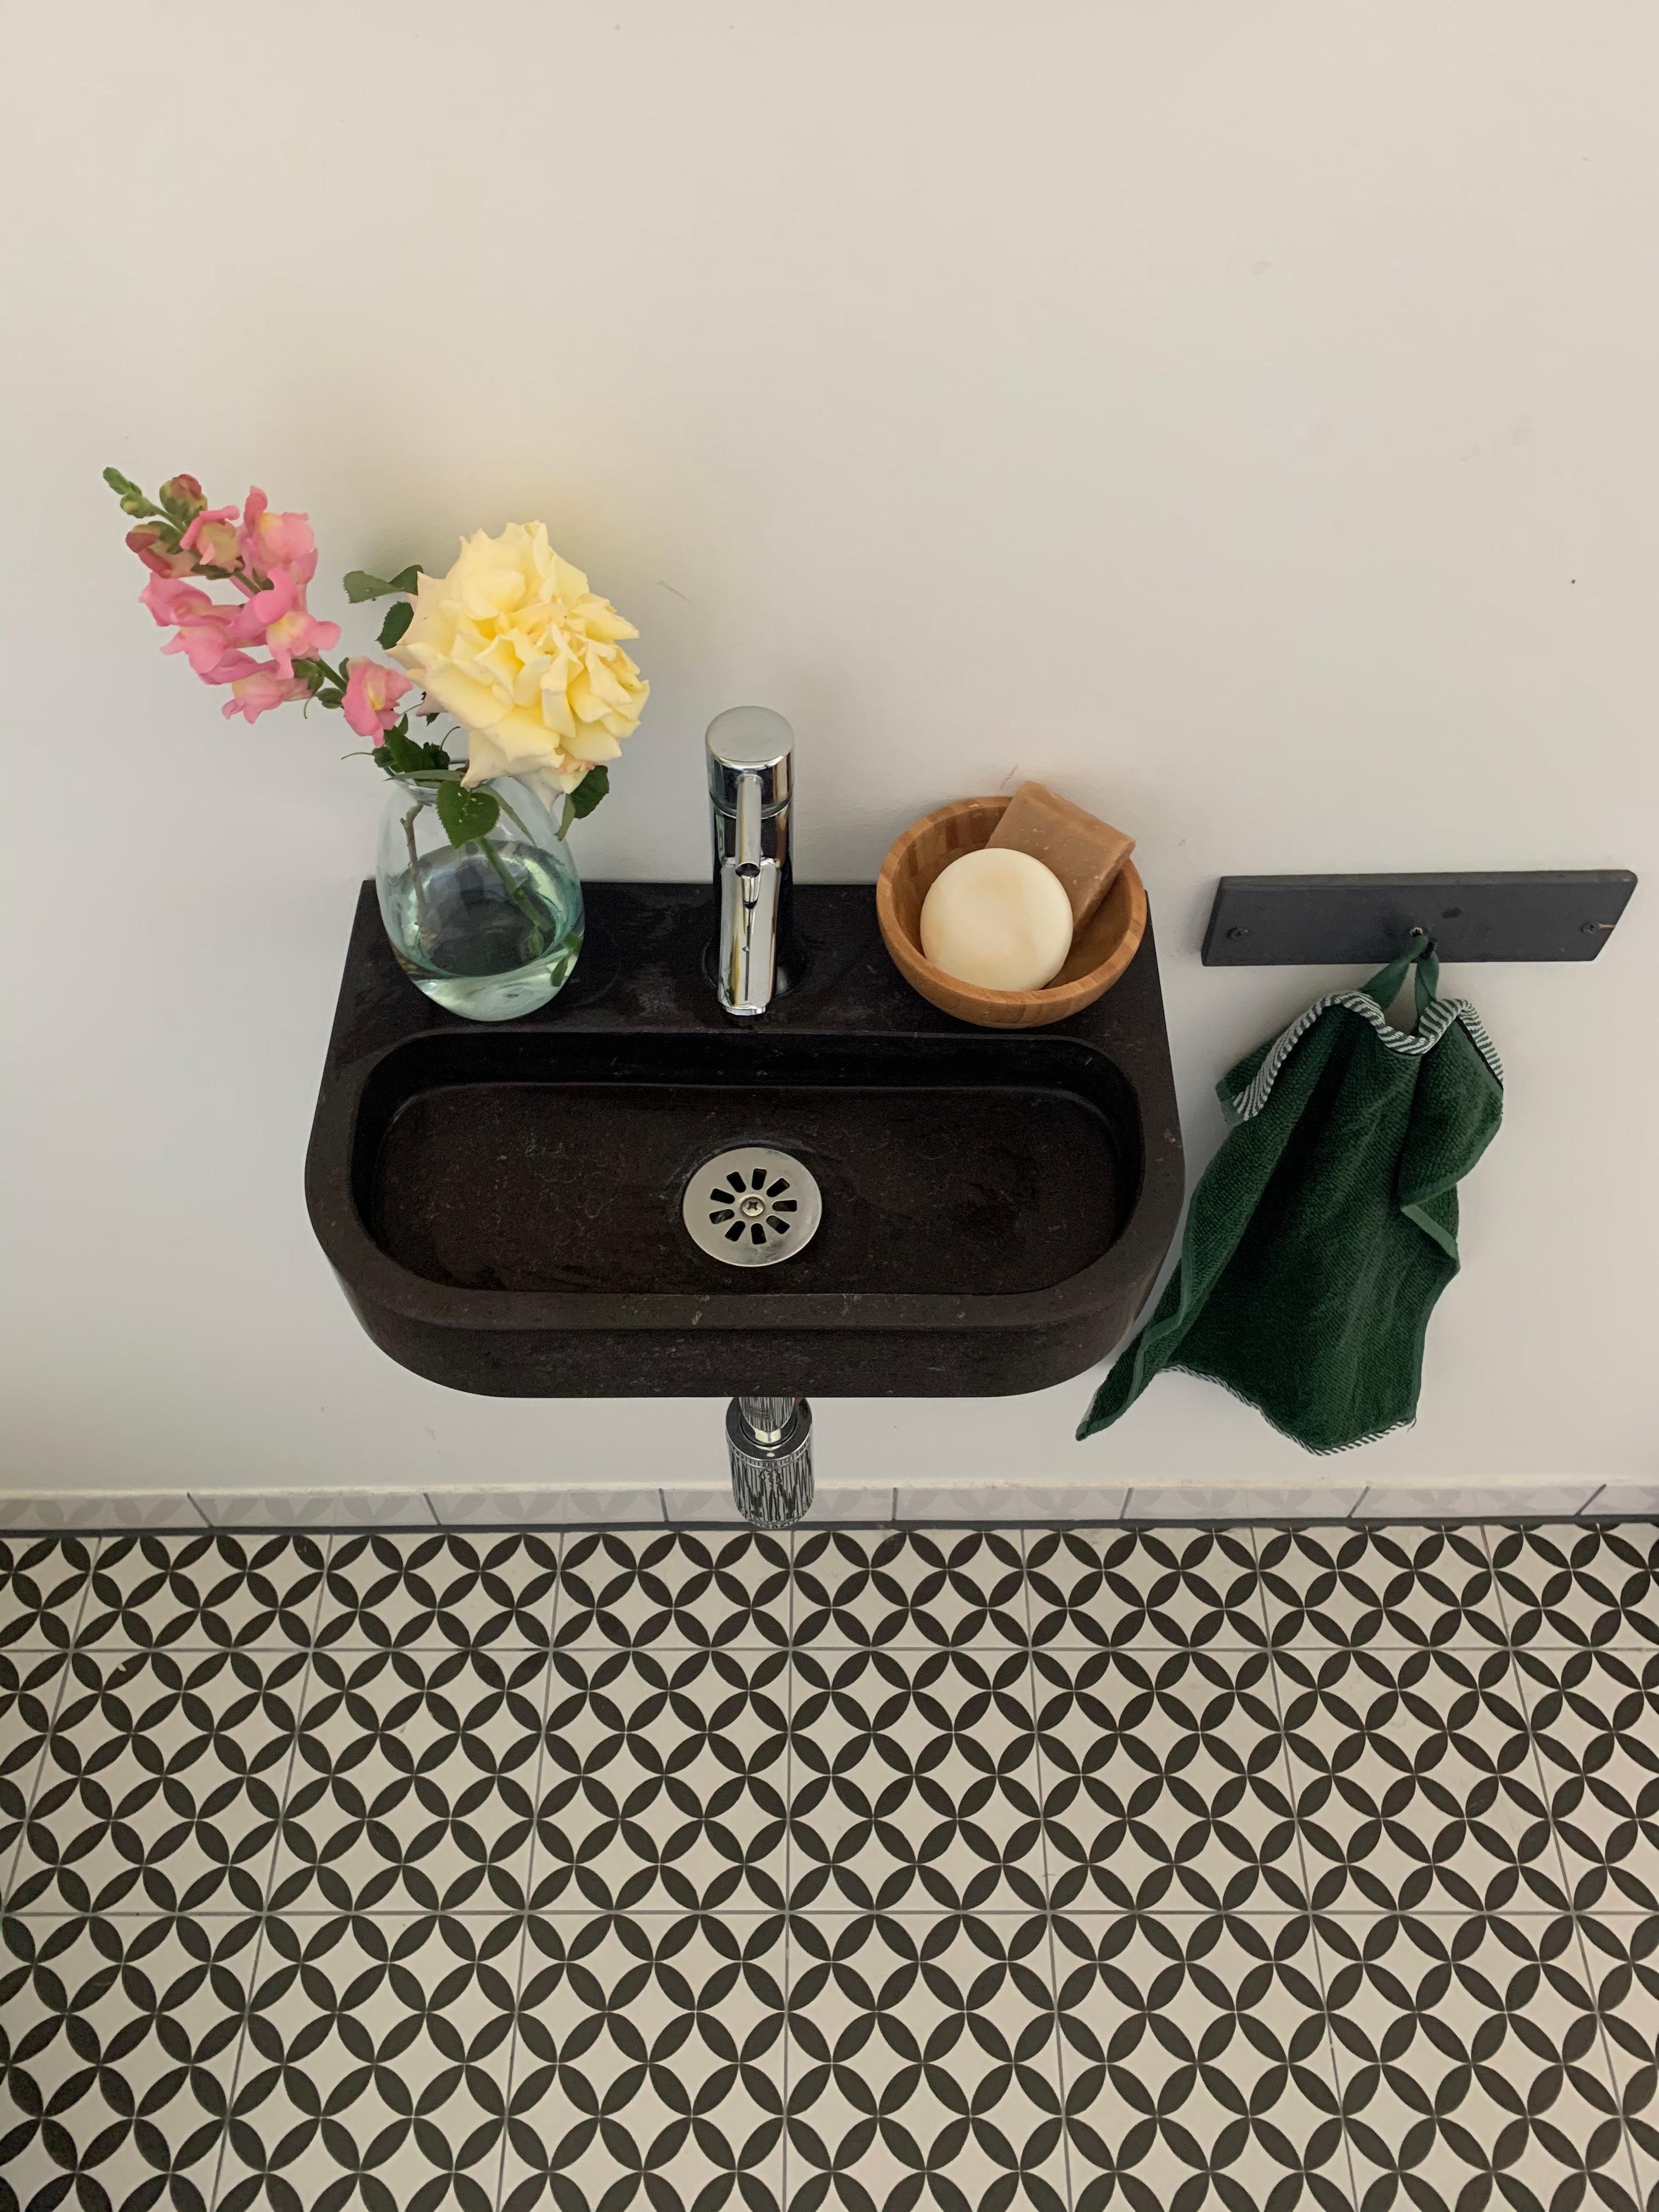 Gäste-WC-Teil des Badezimmers 😉

#badinspo #bathroomdecor #fliesenliebe